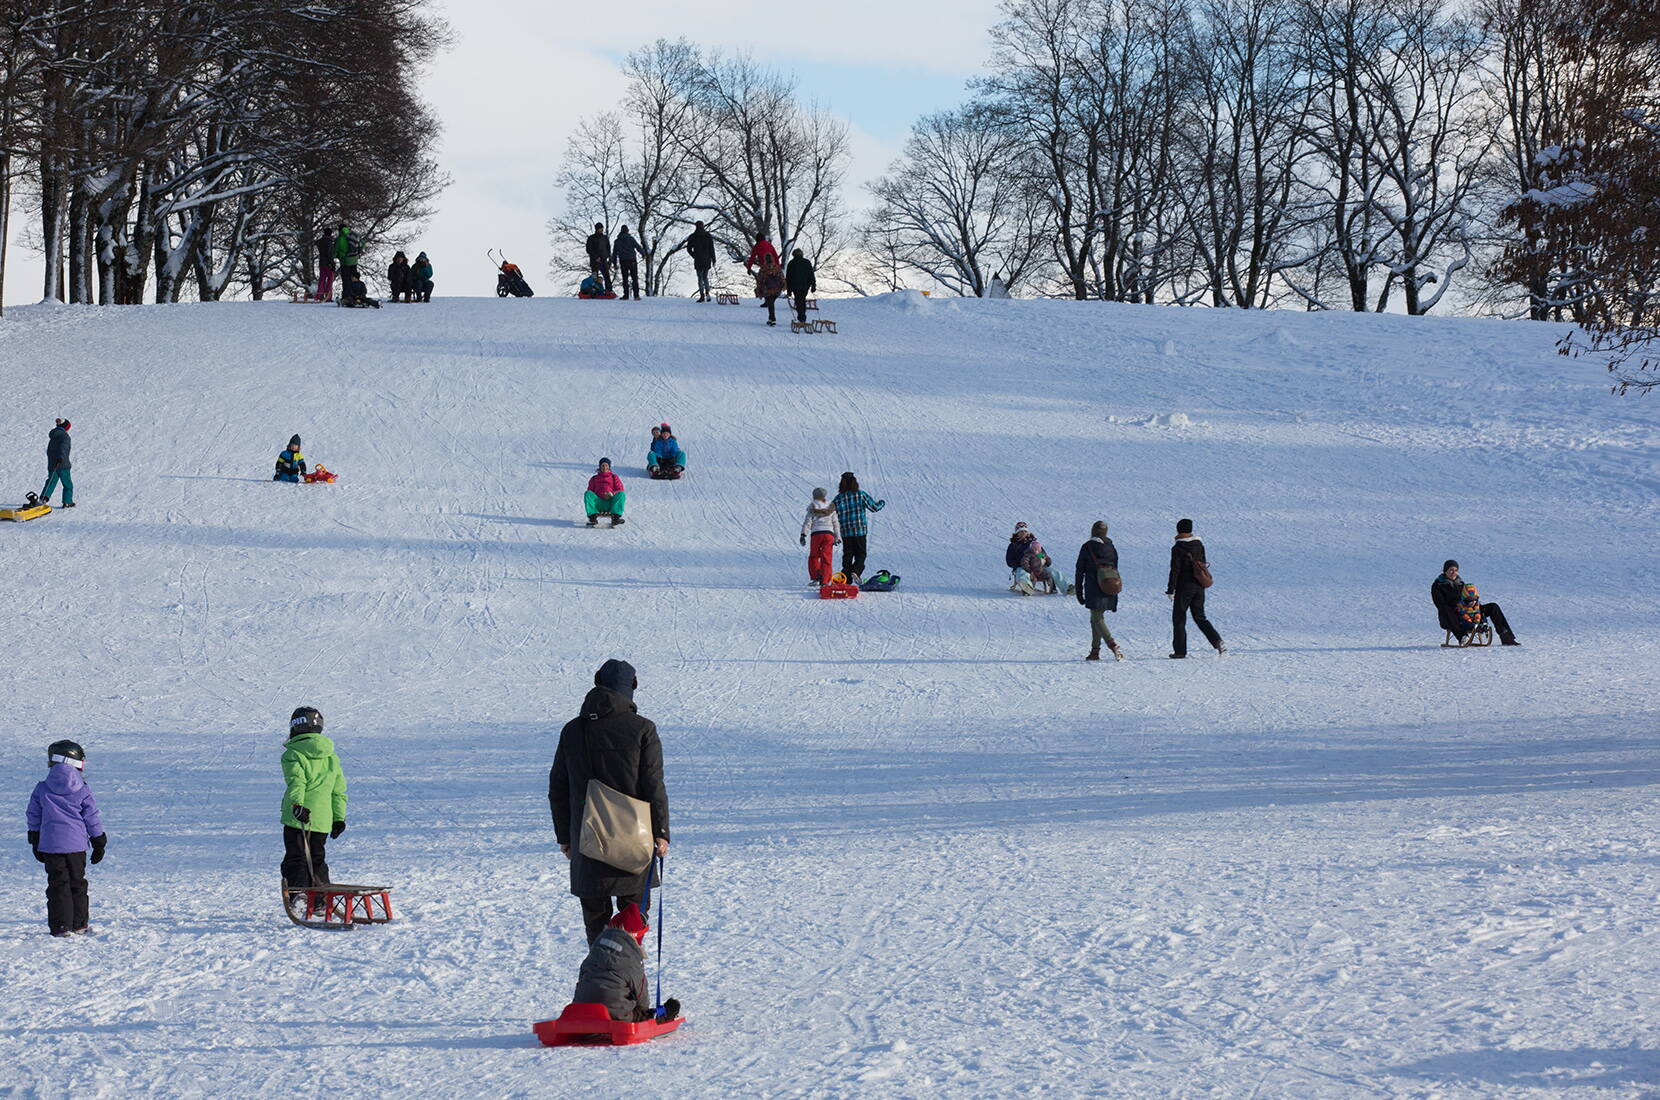 Familienausflug Bern: Auf dem Berner Hausberg, dem Gurten, kann bei genügend Schnee geschlittelt werden.